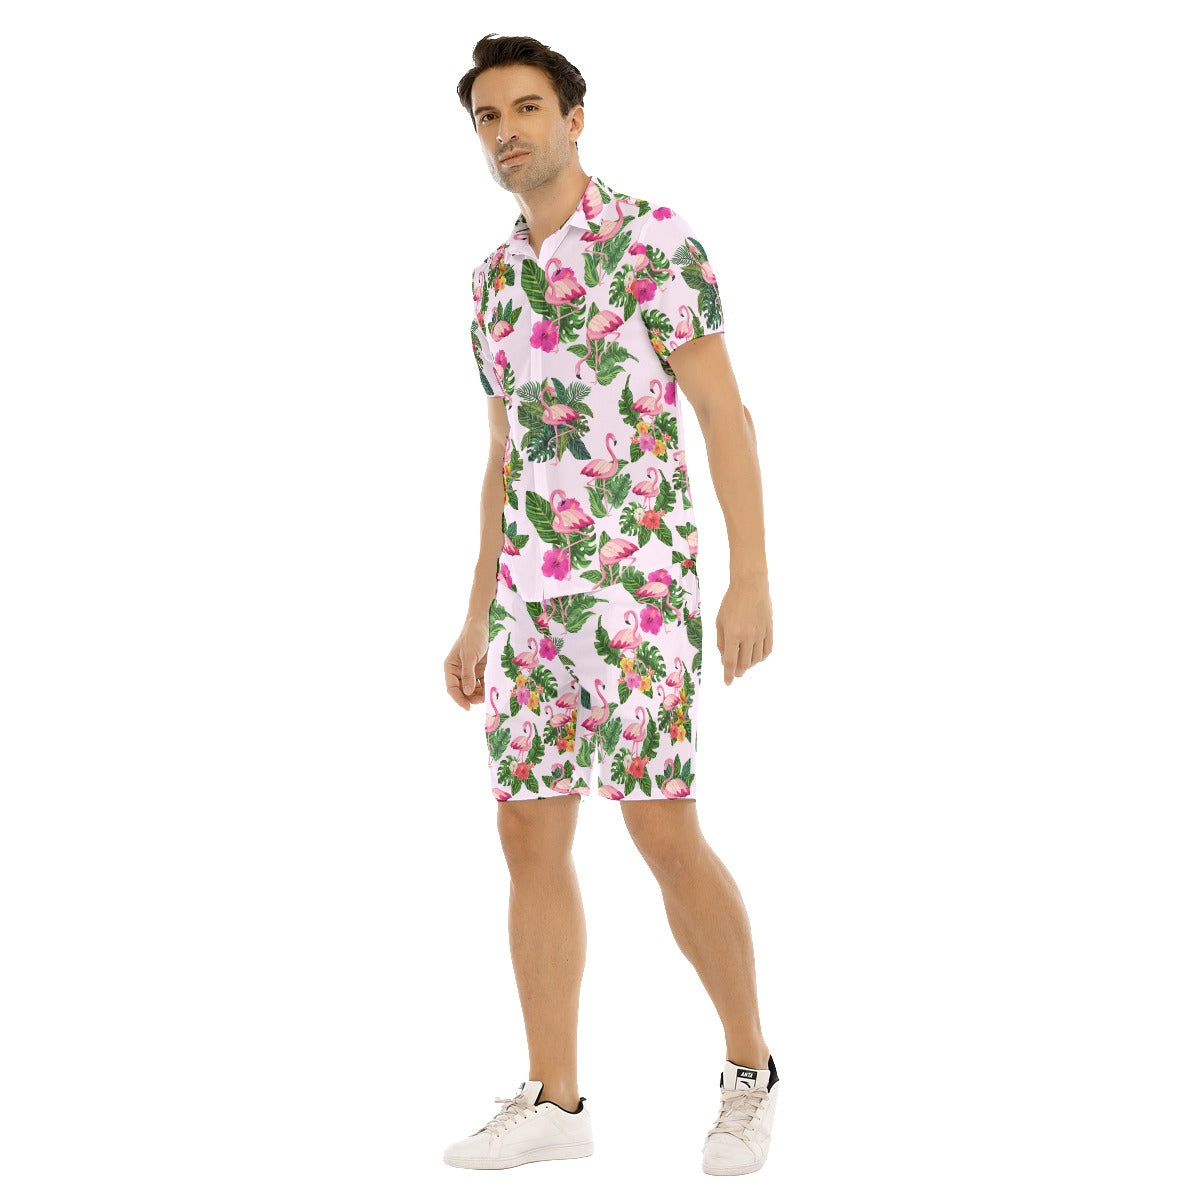 Flamingoing Along Men's Shirt and Shorts Set